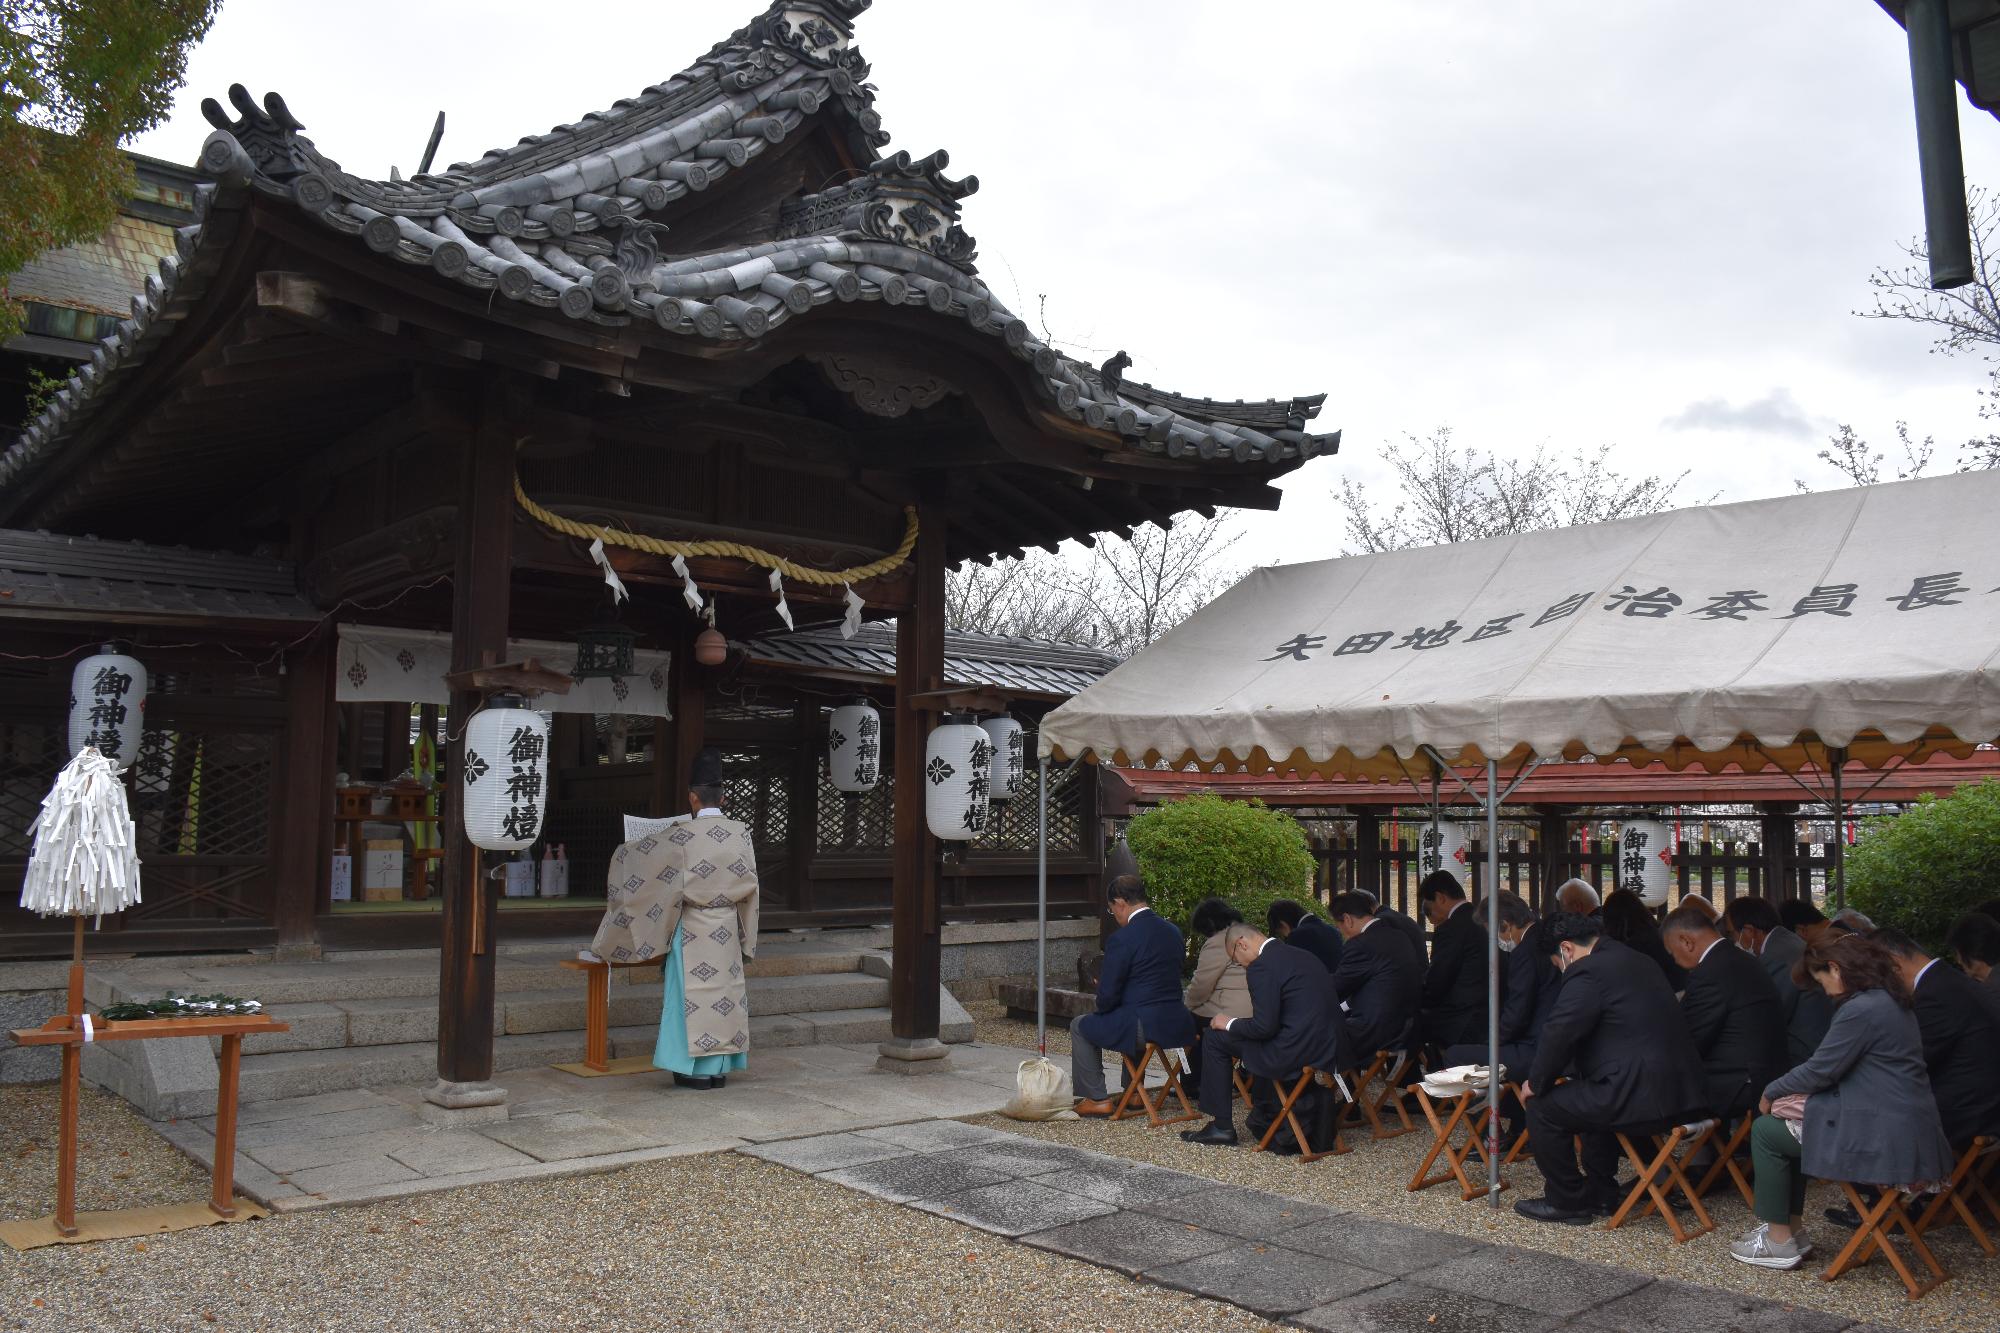 柳澤神社で執り行われた奉告祭。宮司が祝詞をあげ、参列者が礼をしている。